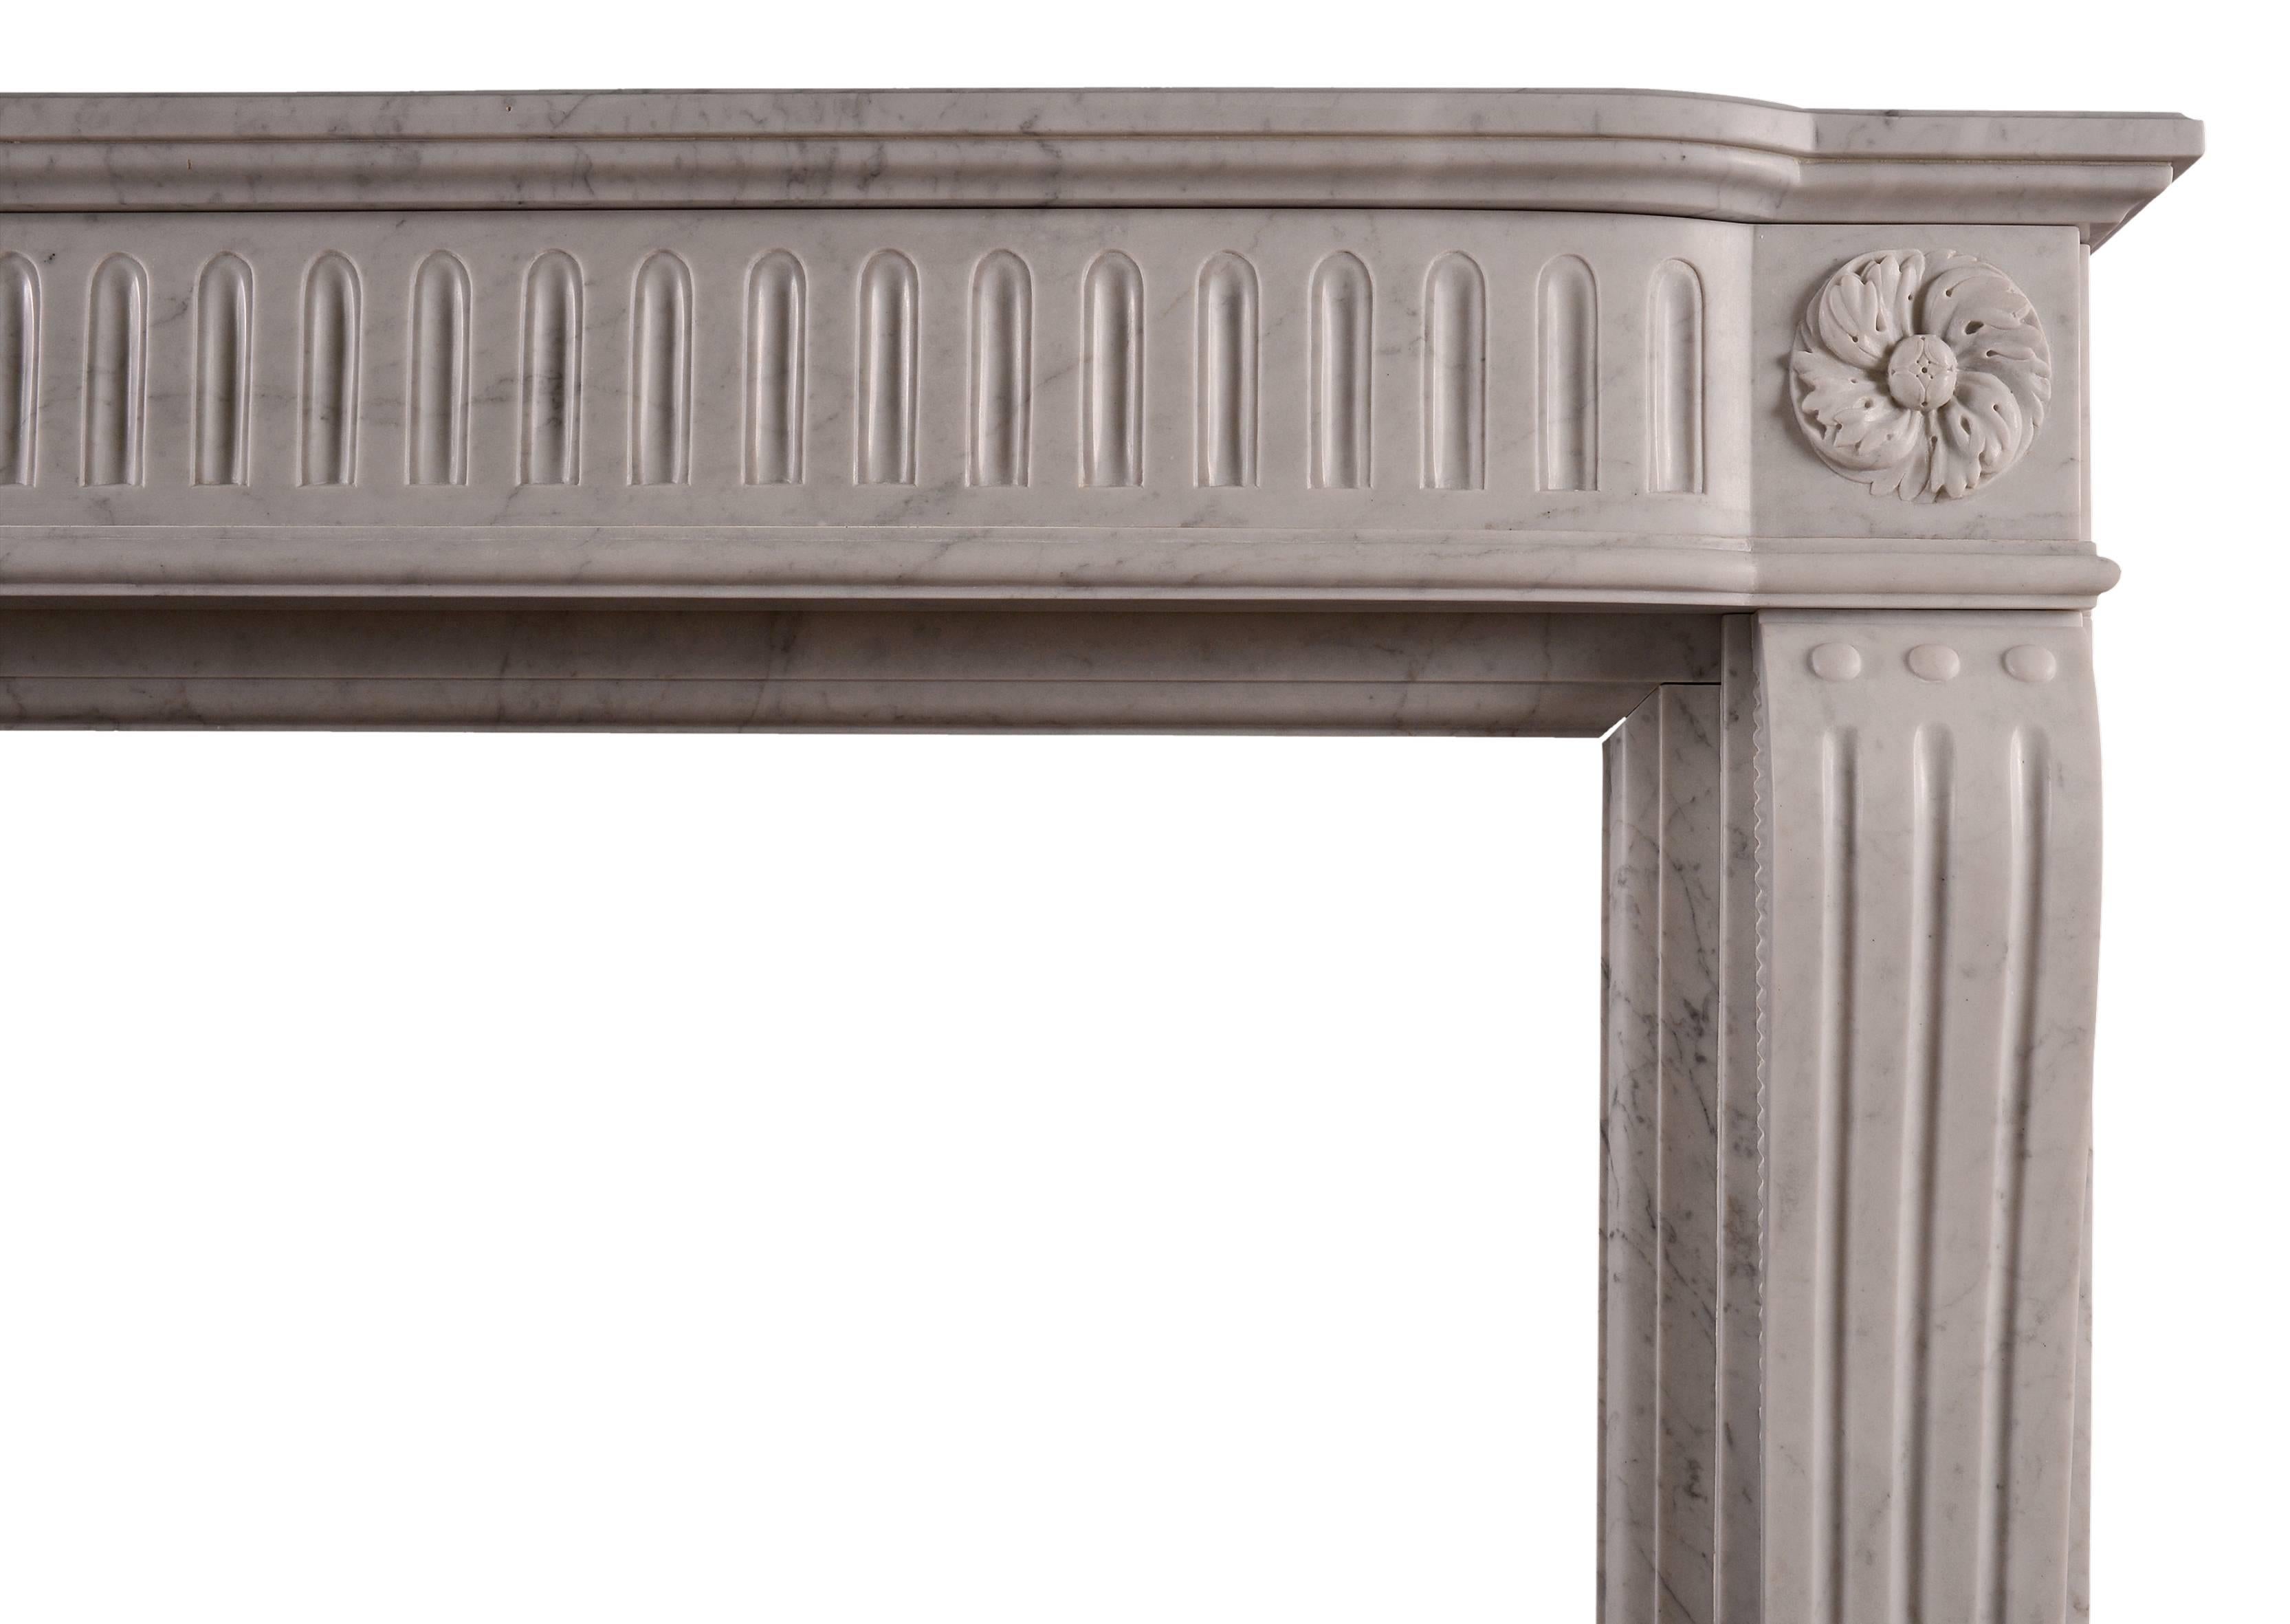 Ein Kamin aus Carrara-Marmor im Stil von Louis XVI. Die geformten, kannelierten Pfosten werden von geschnitzten, wirbelnden Paterae gekrönt. Der gewölbte Fries mit passenden Kanneluren und profilierter Ablagefläche darüber, französisch,